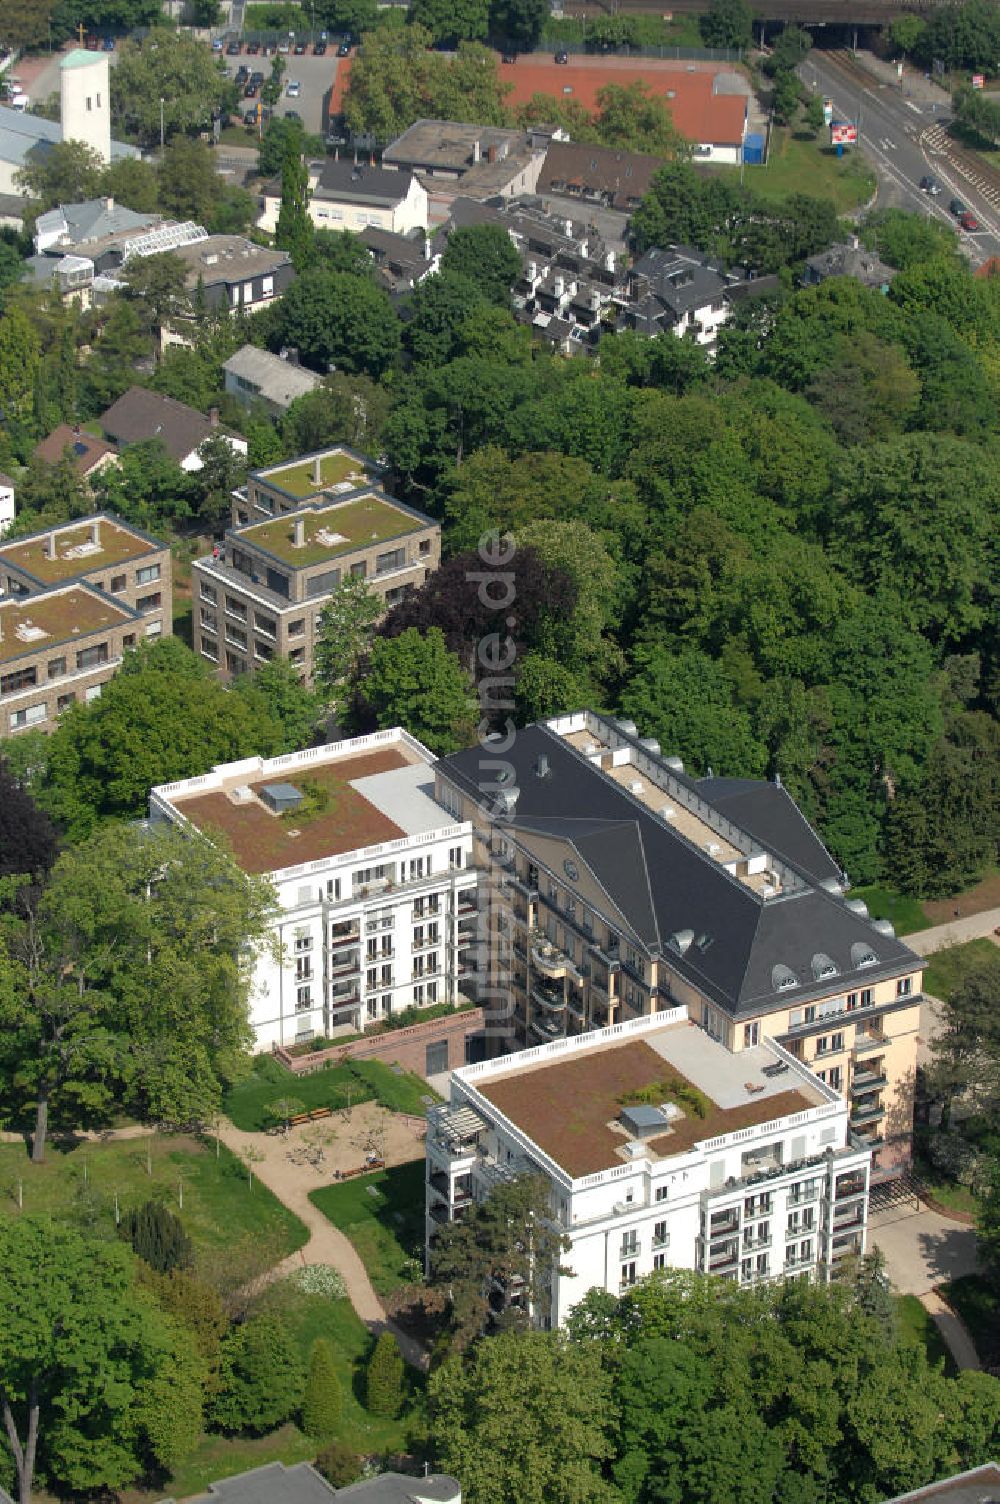 Luftbild Frankfurt am Main - Blick auf die SchlossResidence Mühlberg im Frankfurter Stadtteil Sachsenhausen